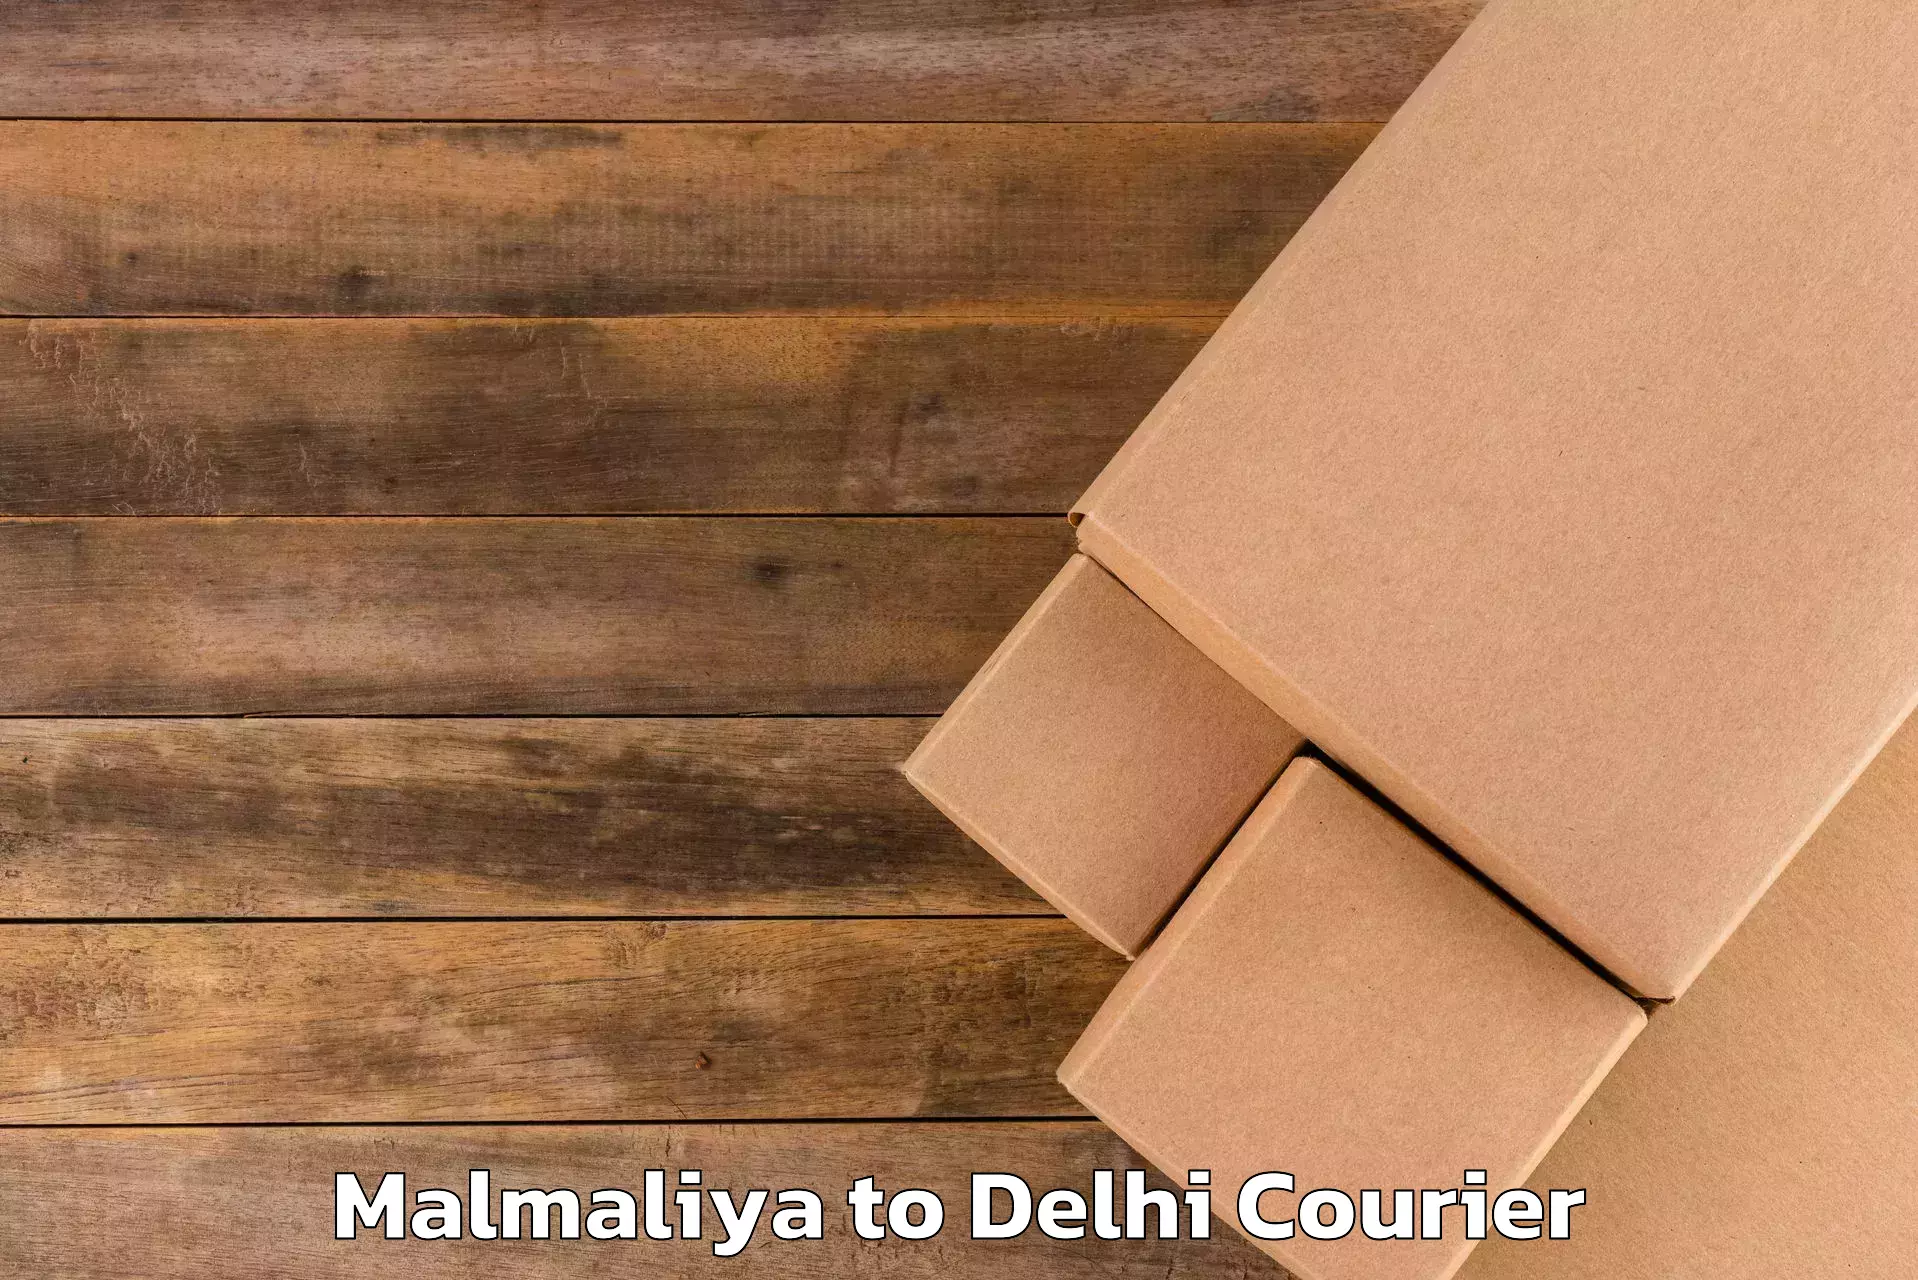 Baggage delivery planning Malmaliya to Sansad Marg